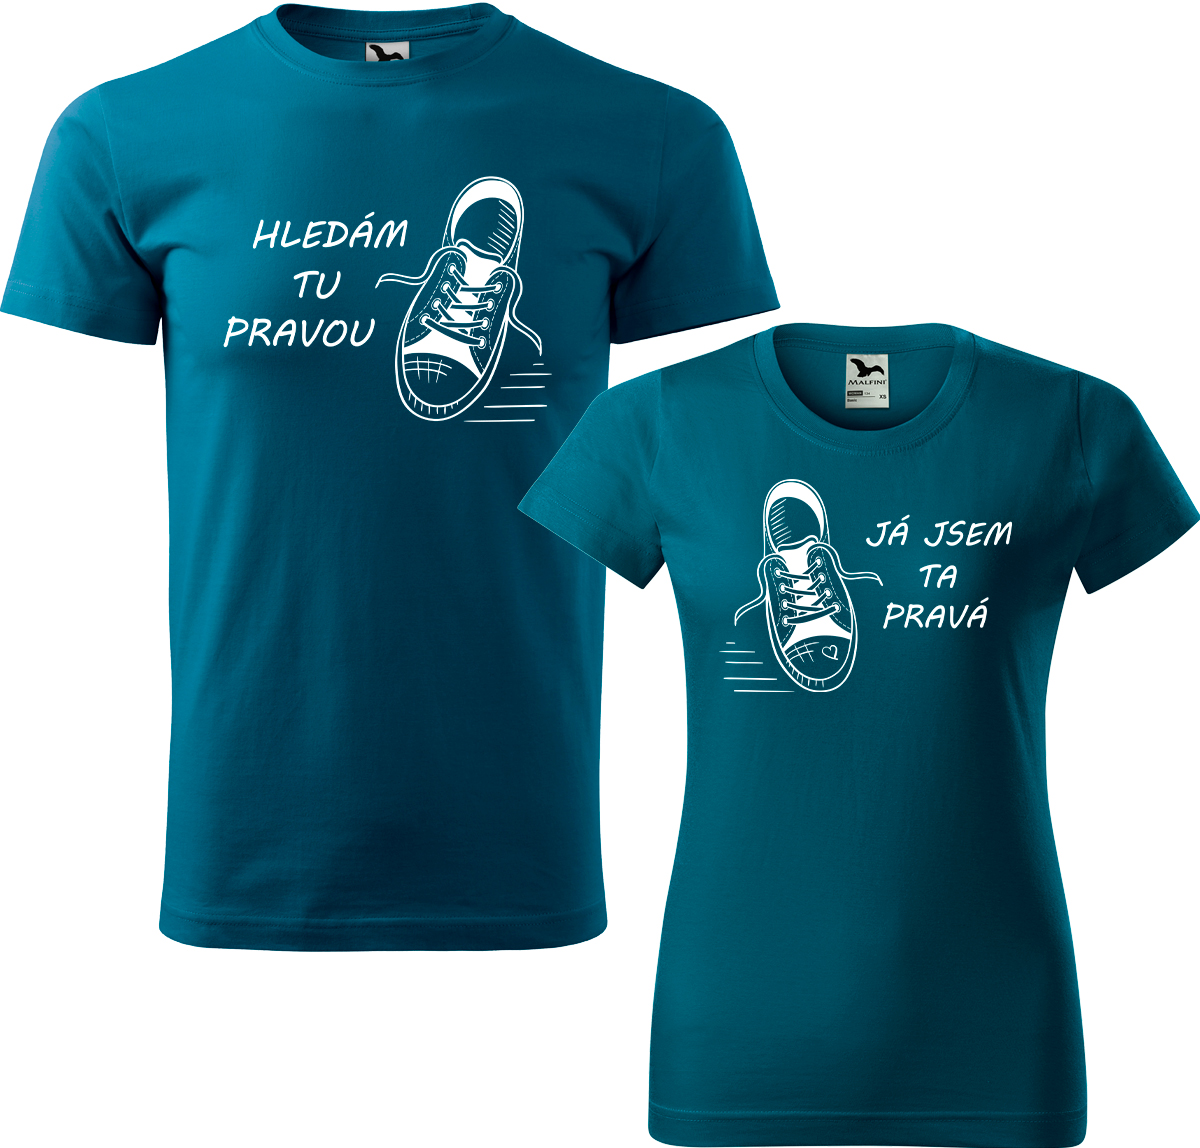 Trička pro páry - Kecky Barva: Petrolejová (93), Velikost dámské tričko: L, Velikost pánské tričko: XL